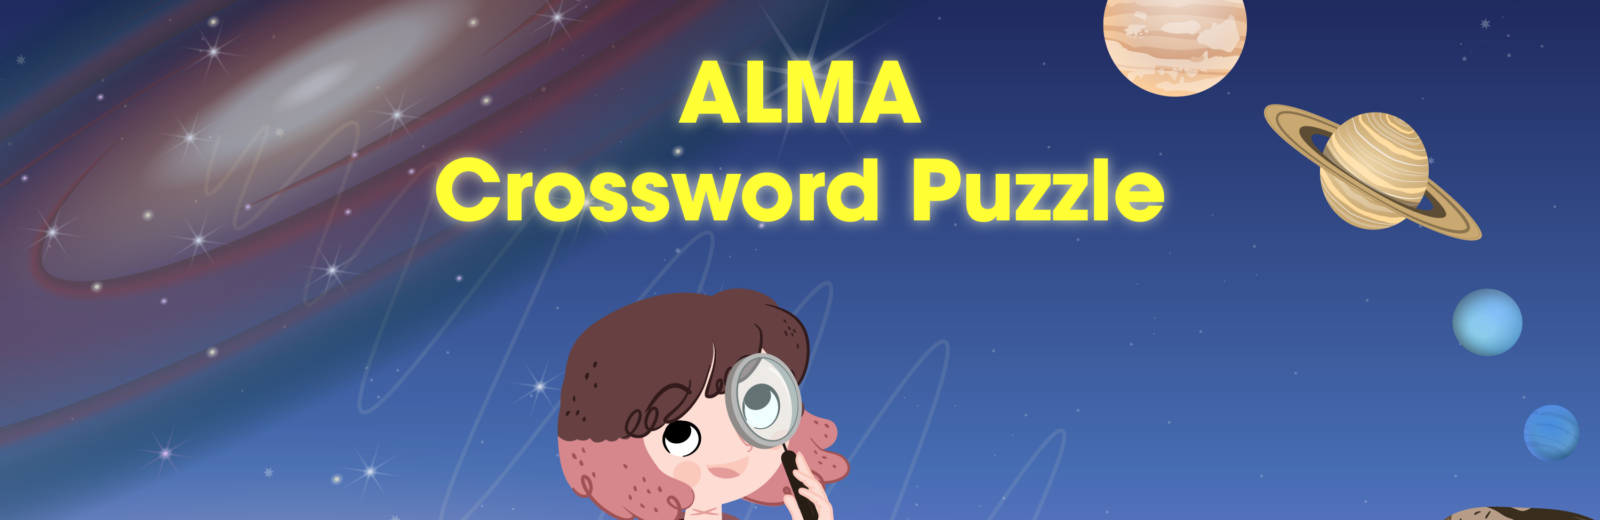 ALMA Crossword Puzzle